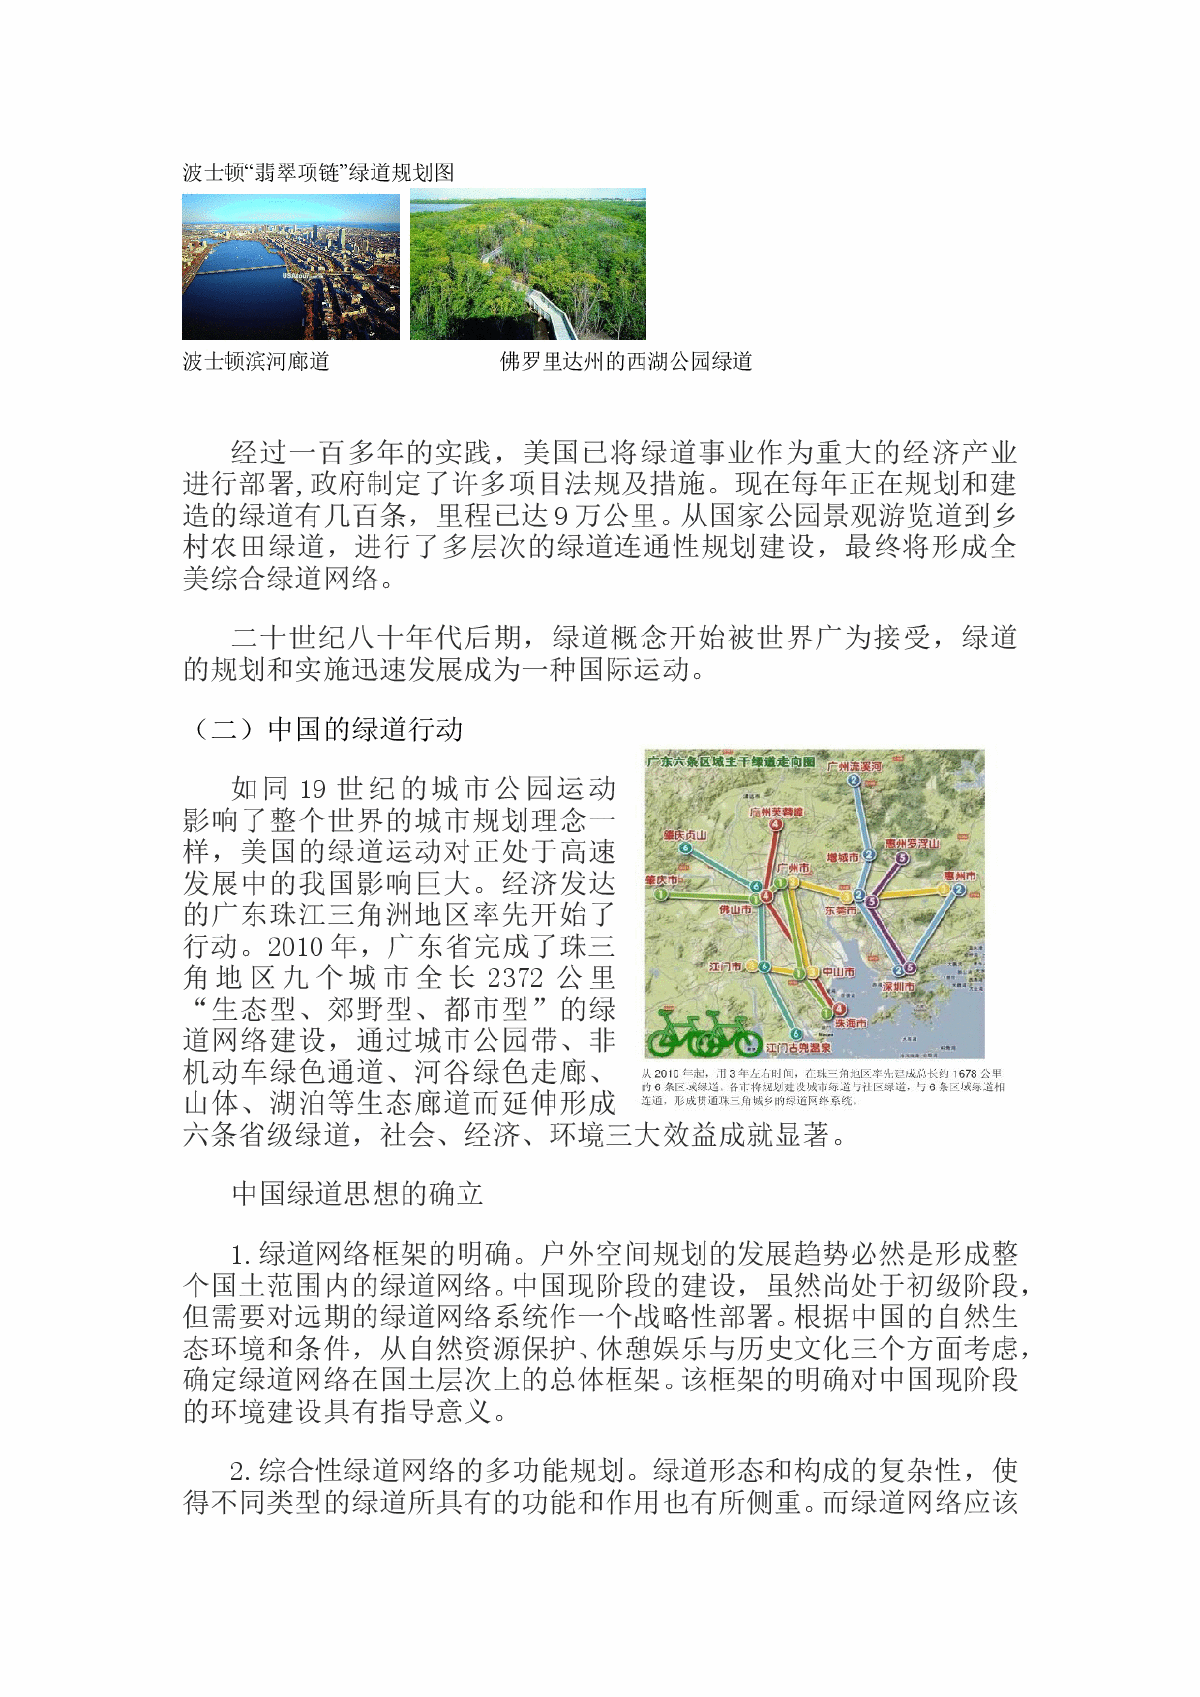 绿道运动对沁河生态景观廊道规划的启示-图二